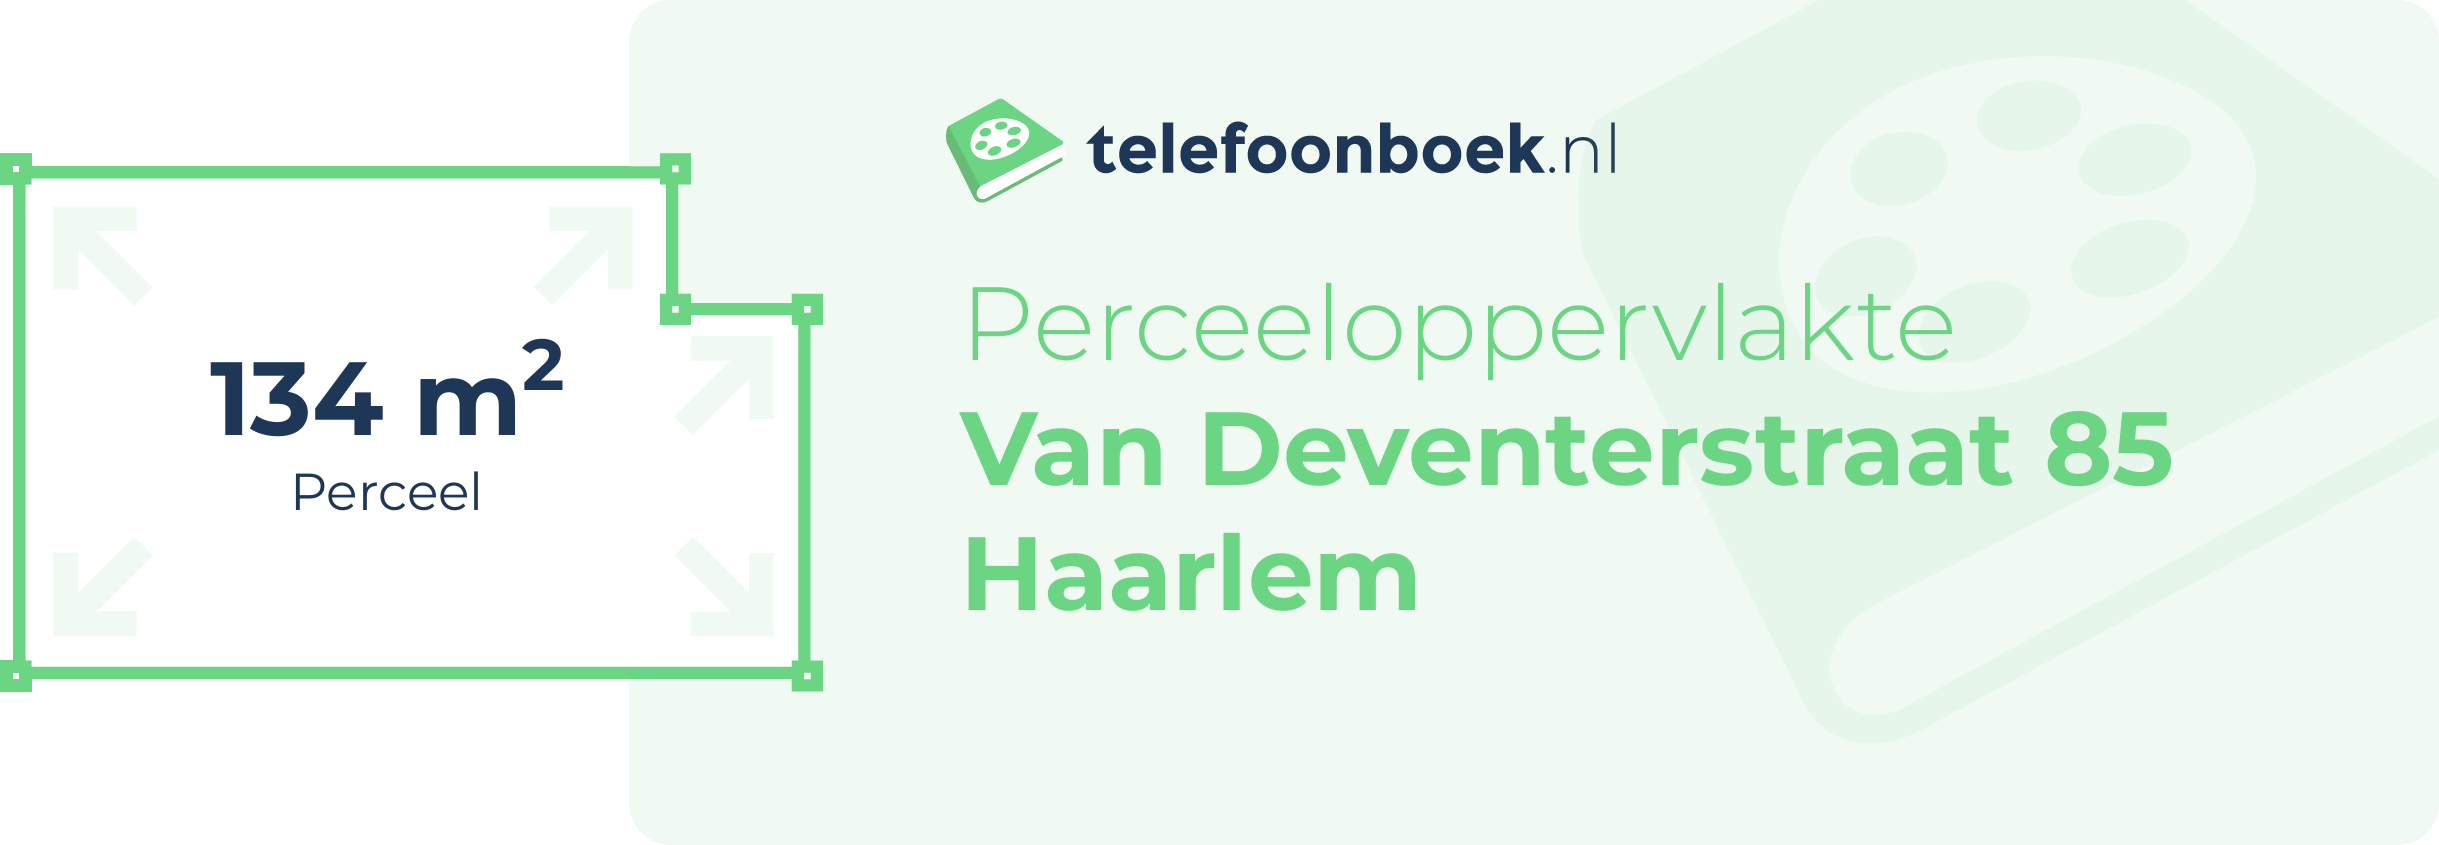 Perceeloppervlakte Van Deventerstraat 85 Haarlem